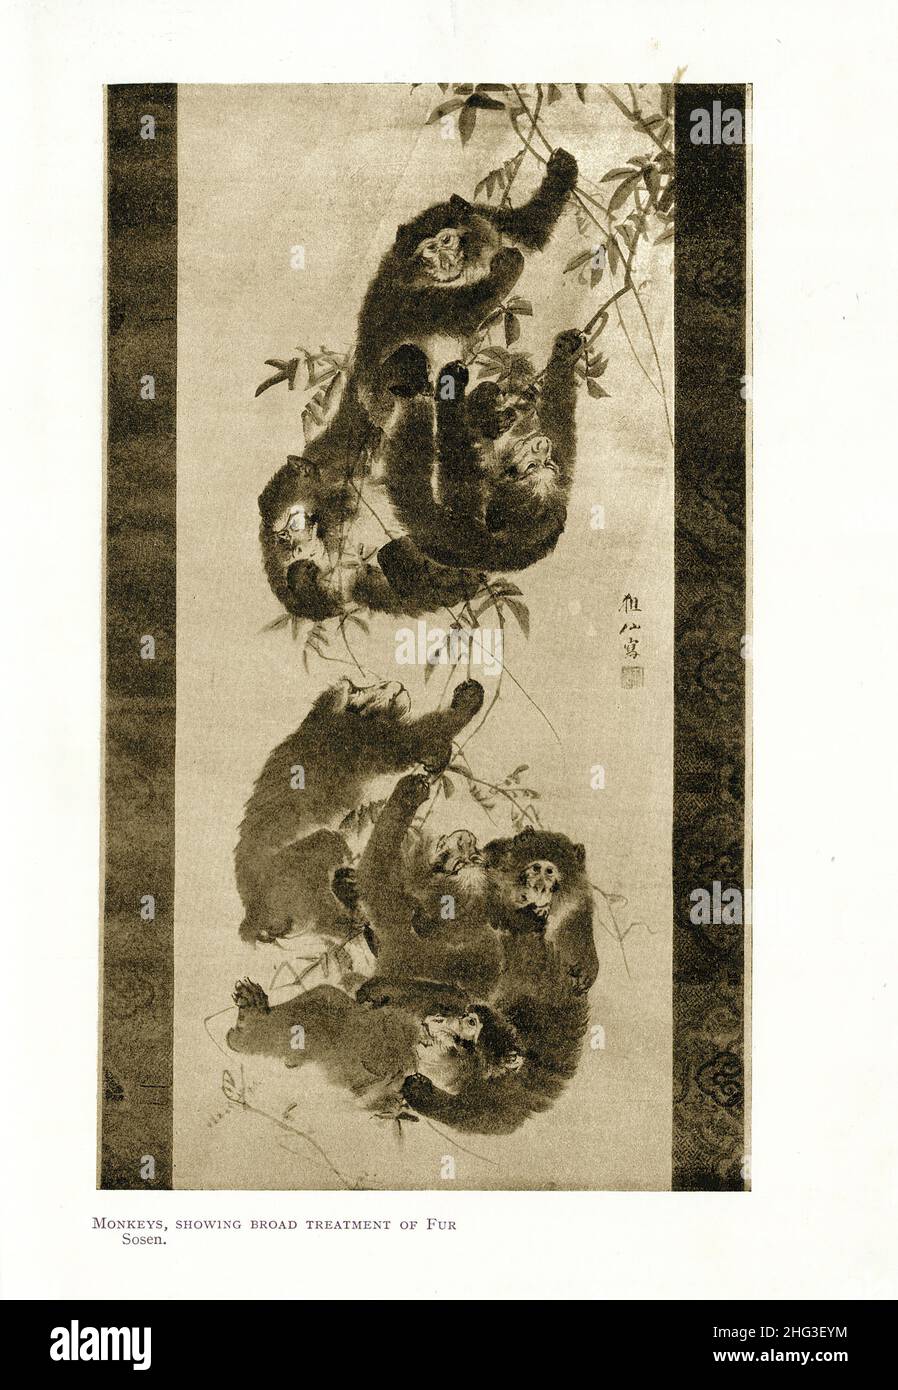 Japanische Malerei des 19th. Jahrhunderts: Affen, zeigt breite Behandlung von Pelz. Von Mori Sosen. Reproduktion der Buchillustration von 1912 Mori Sosen (1747 – 1 Stockfoto